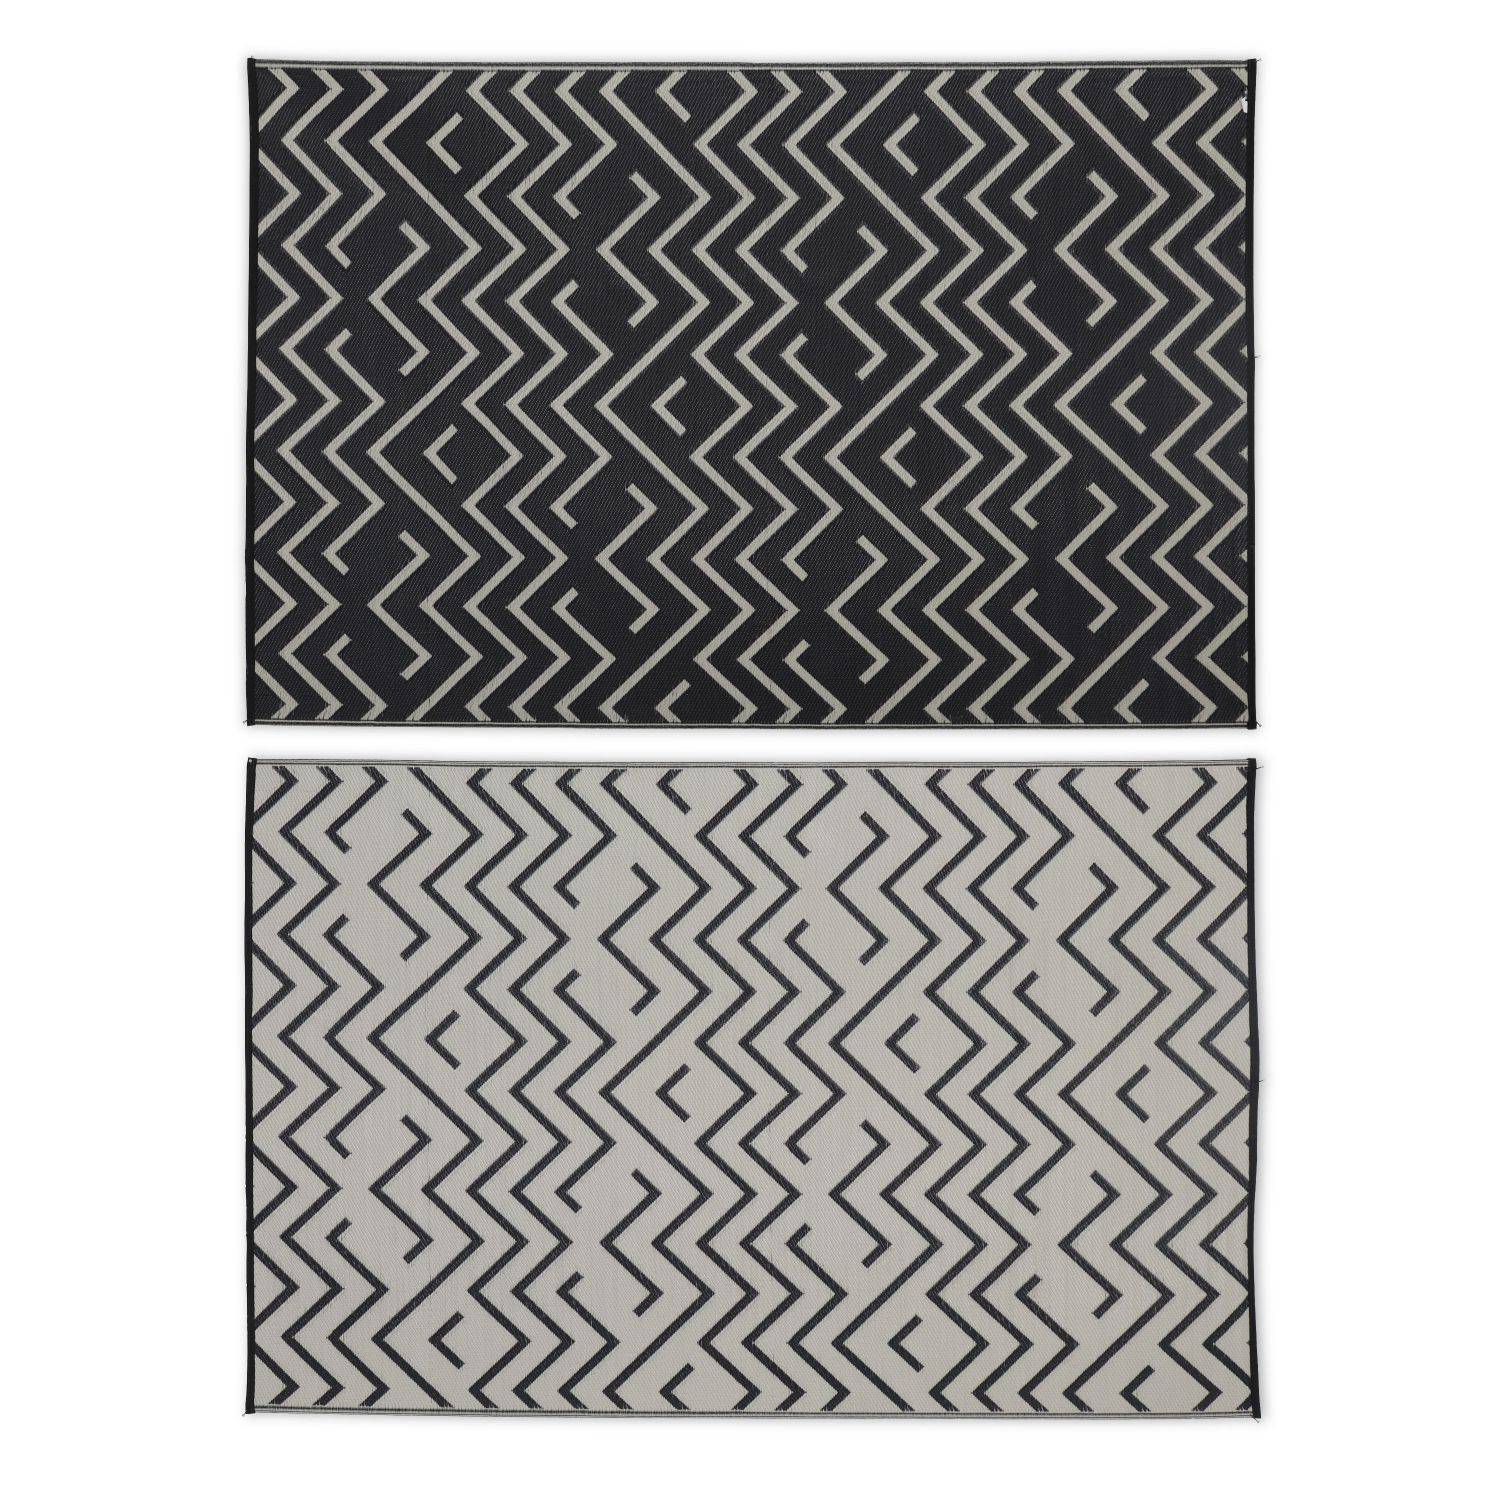 Tapis d’extérieur 180x270cm SYDNEY - Rectangulaire, motif vagues noir / beige, jacquard, réversible, indoor / outdoor Photo2